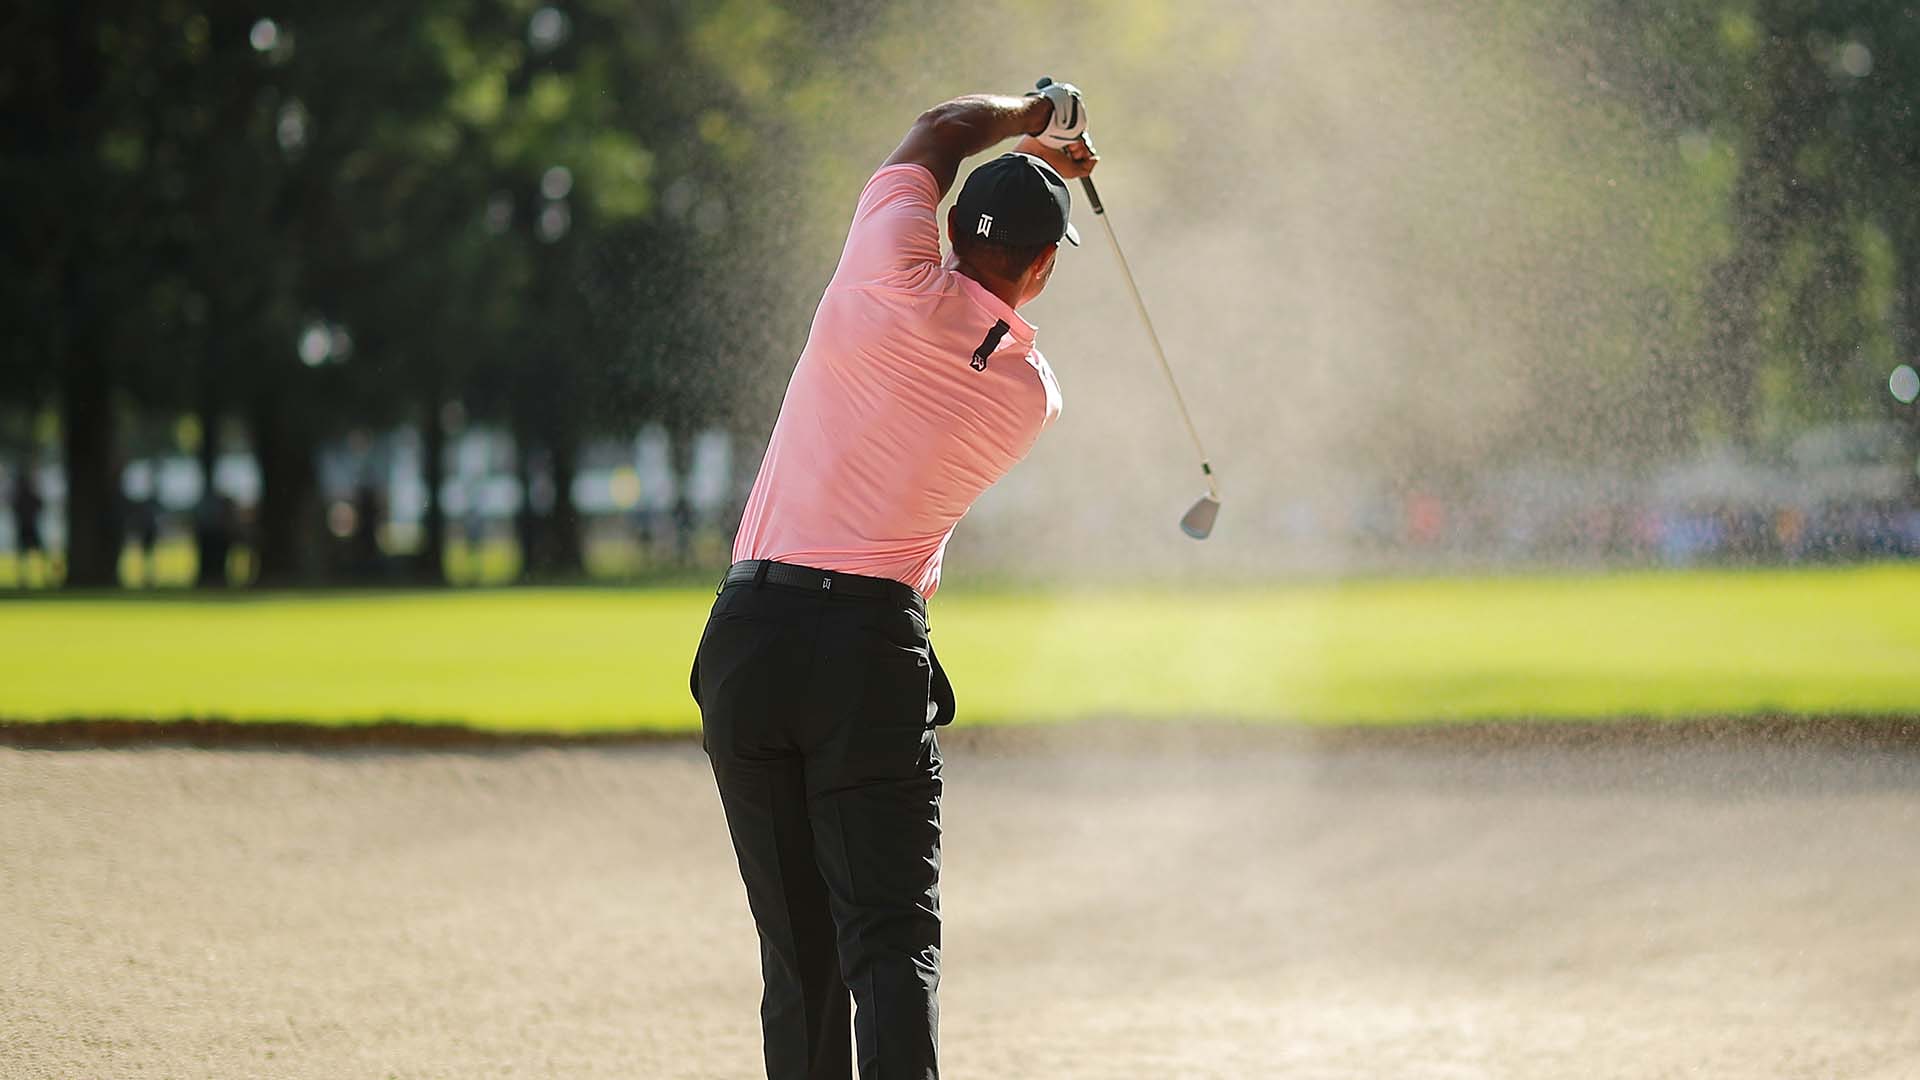 Cú bunker shot của Tiger Woods được Chapultepec Golf Club vinh danh